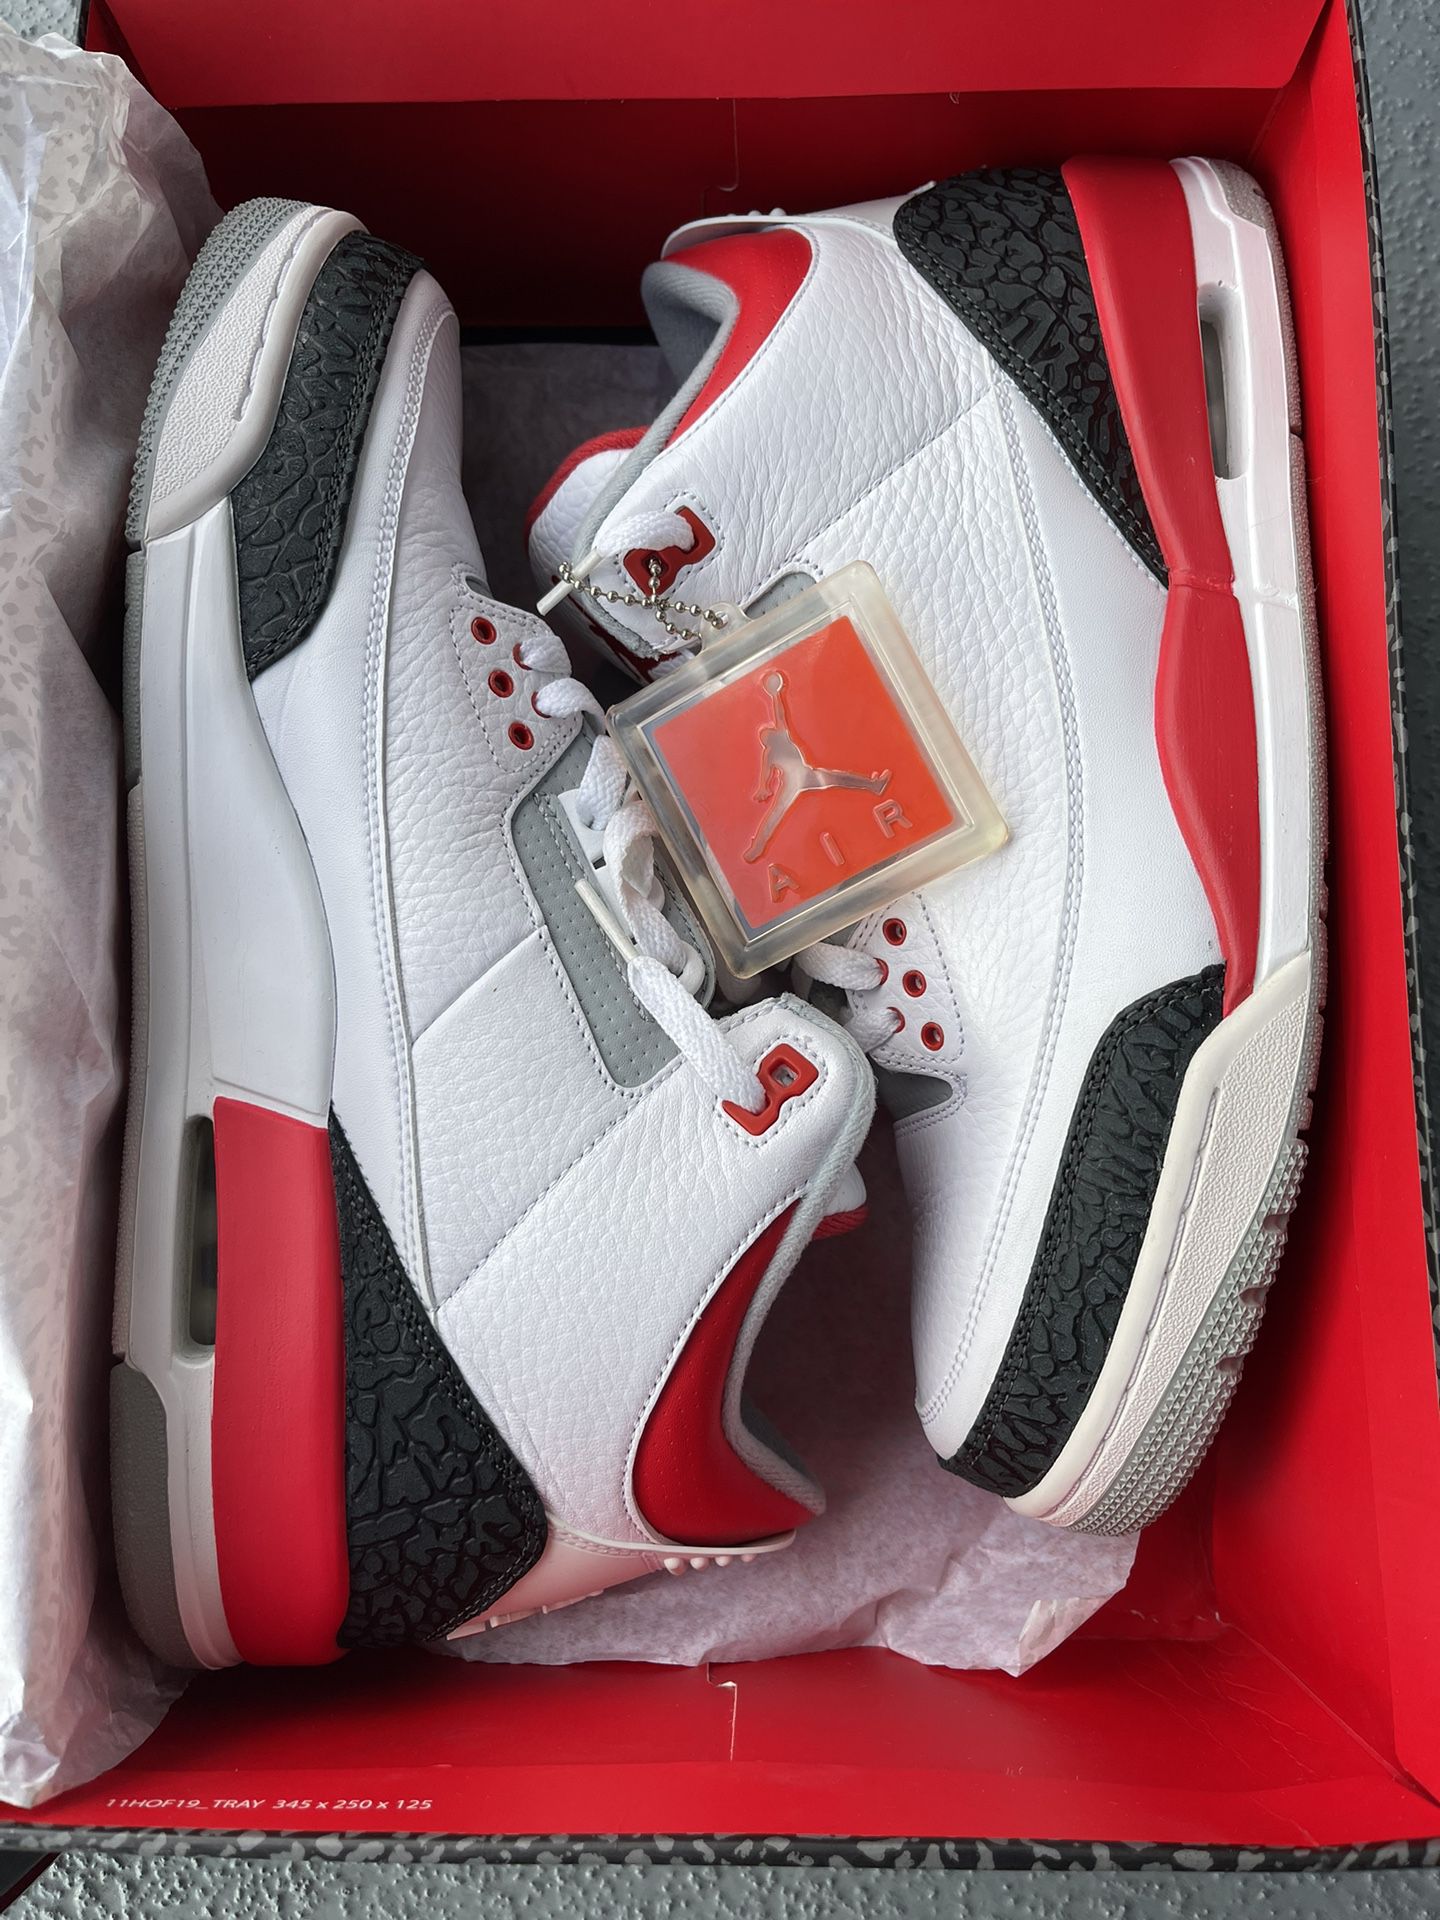 Nike Jordan 3 Fire Red Sz 11.5